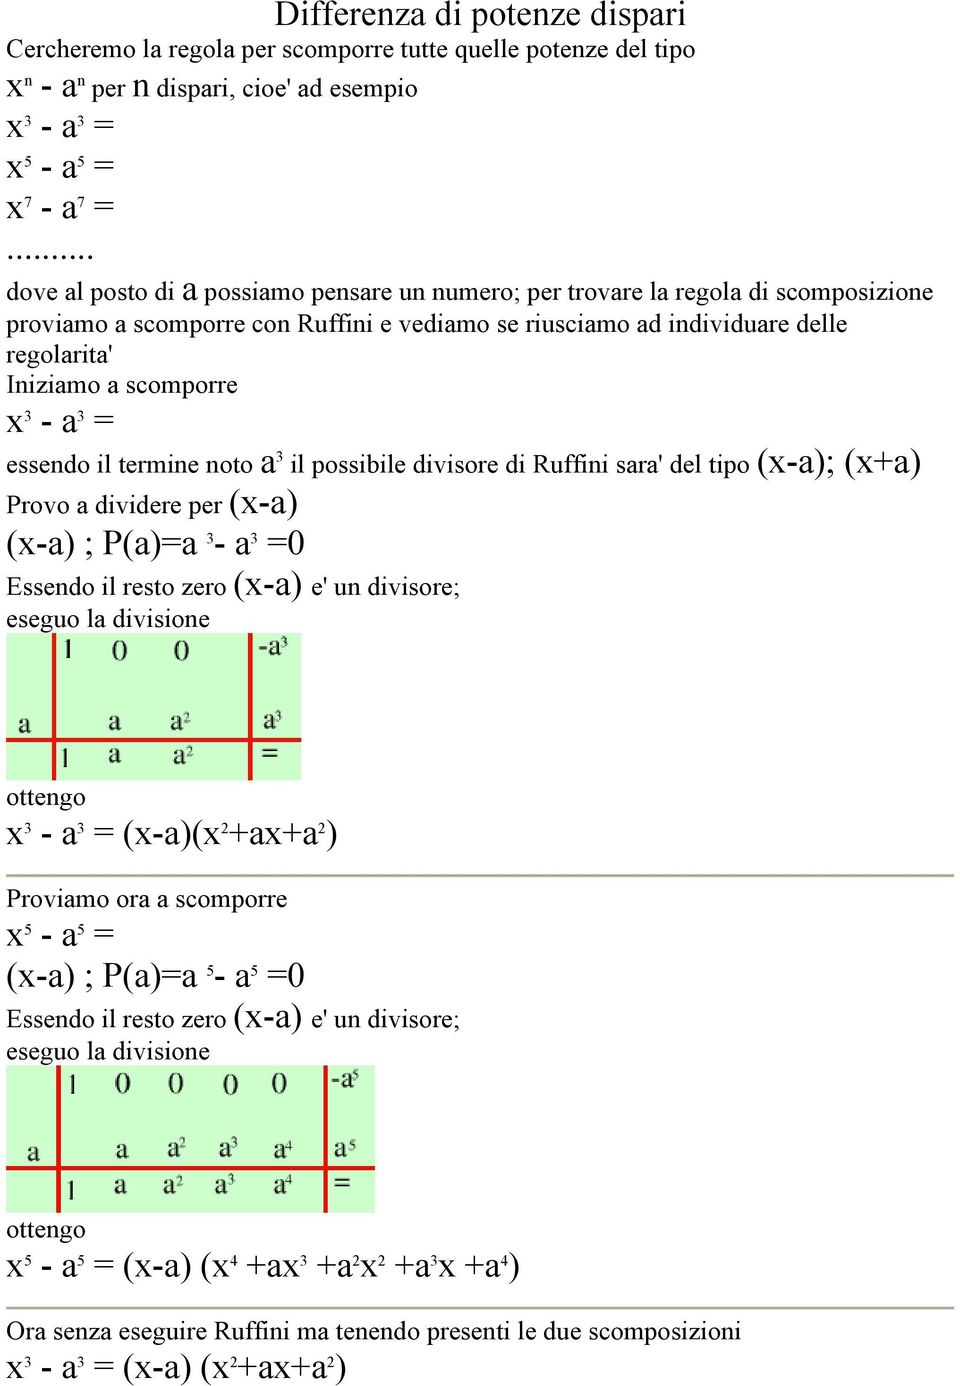 x 3 - a 3 = essendo il termine noto a 3 il possibile divisore di Ruffini sara' del tipo (x-a); (x+a) Provo a dividere per (x-a) (x-a) ; P(a)=a 3 - a 3 =0 Essendo il resto zero (x-a) e' un divisore;